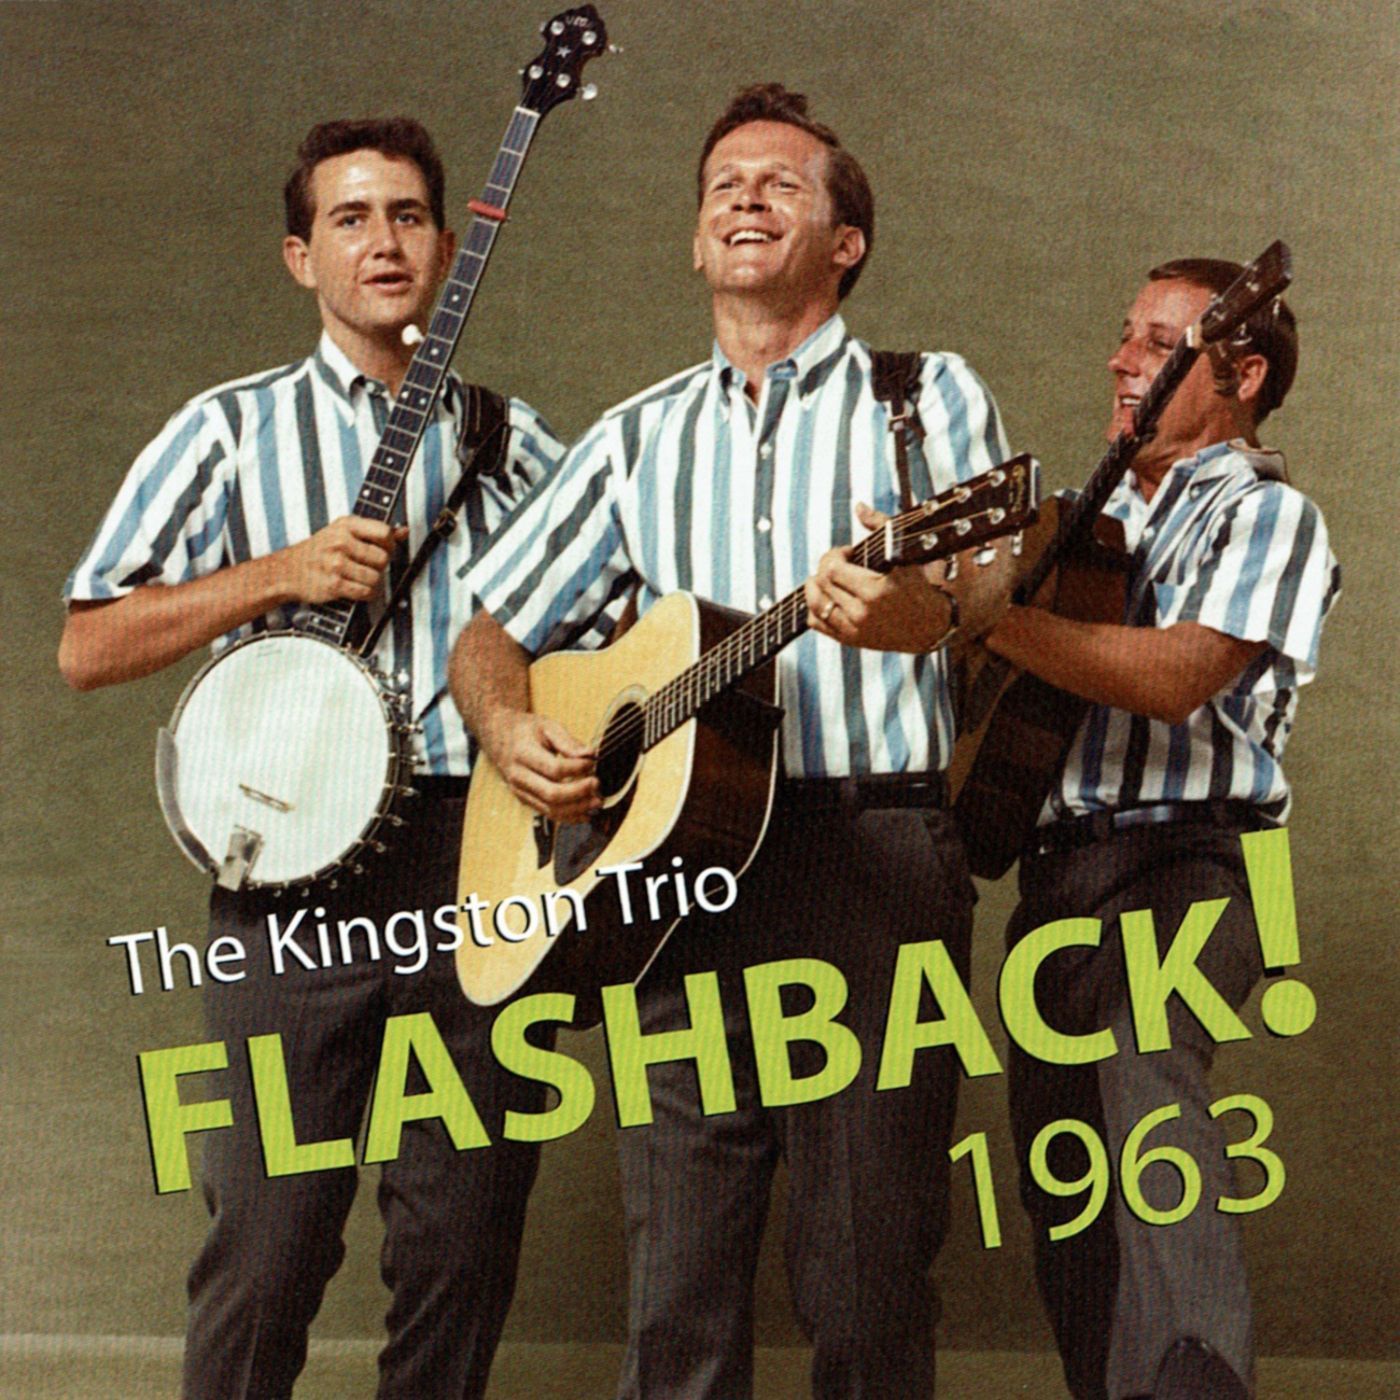 Flashback! 1963